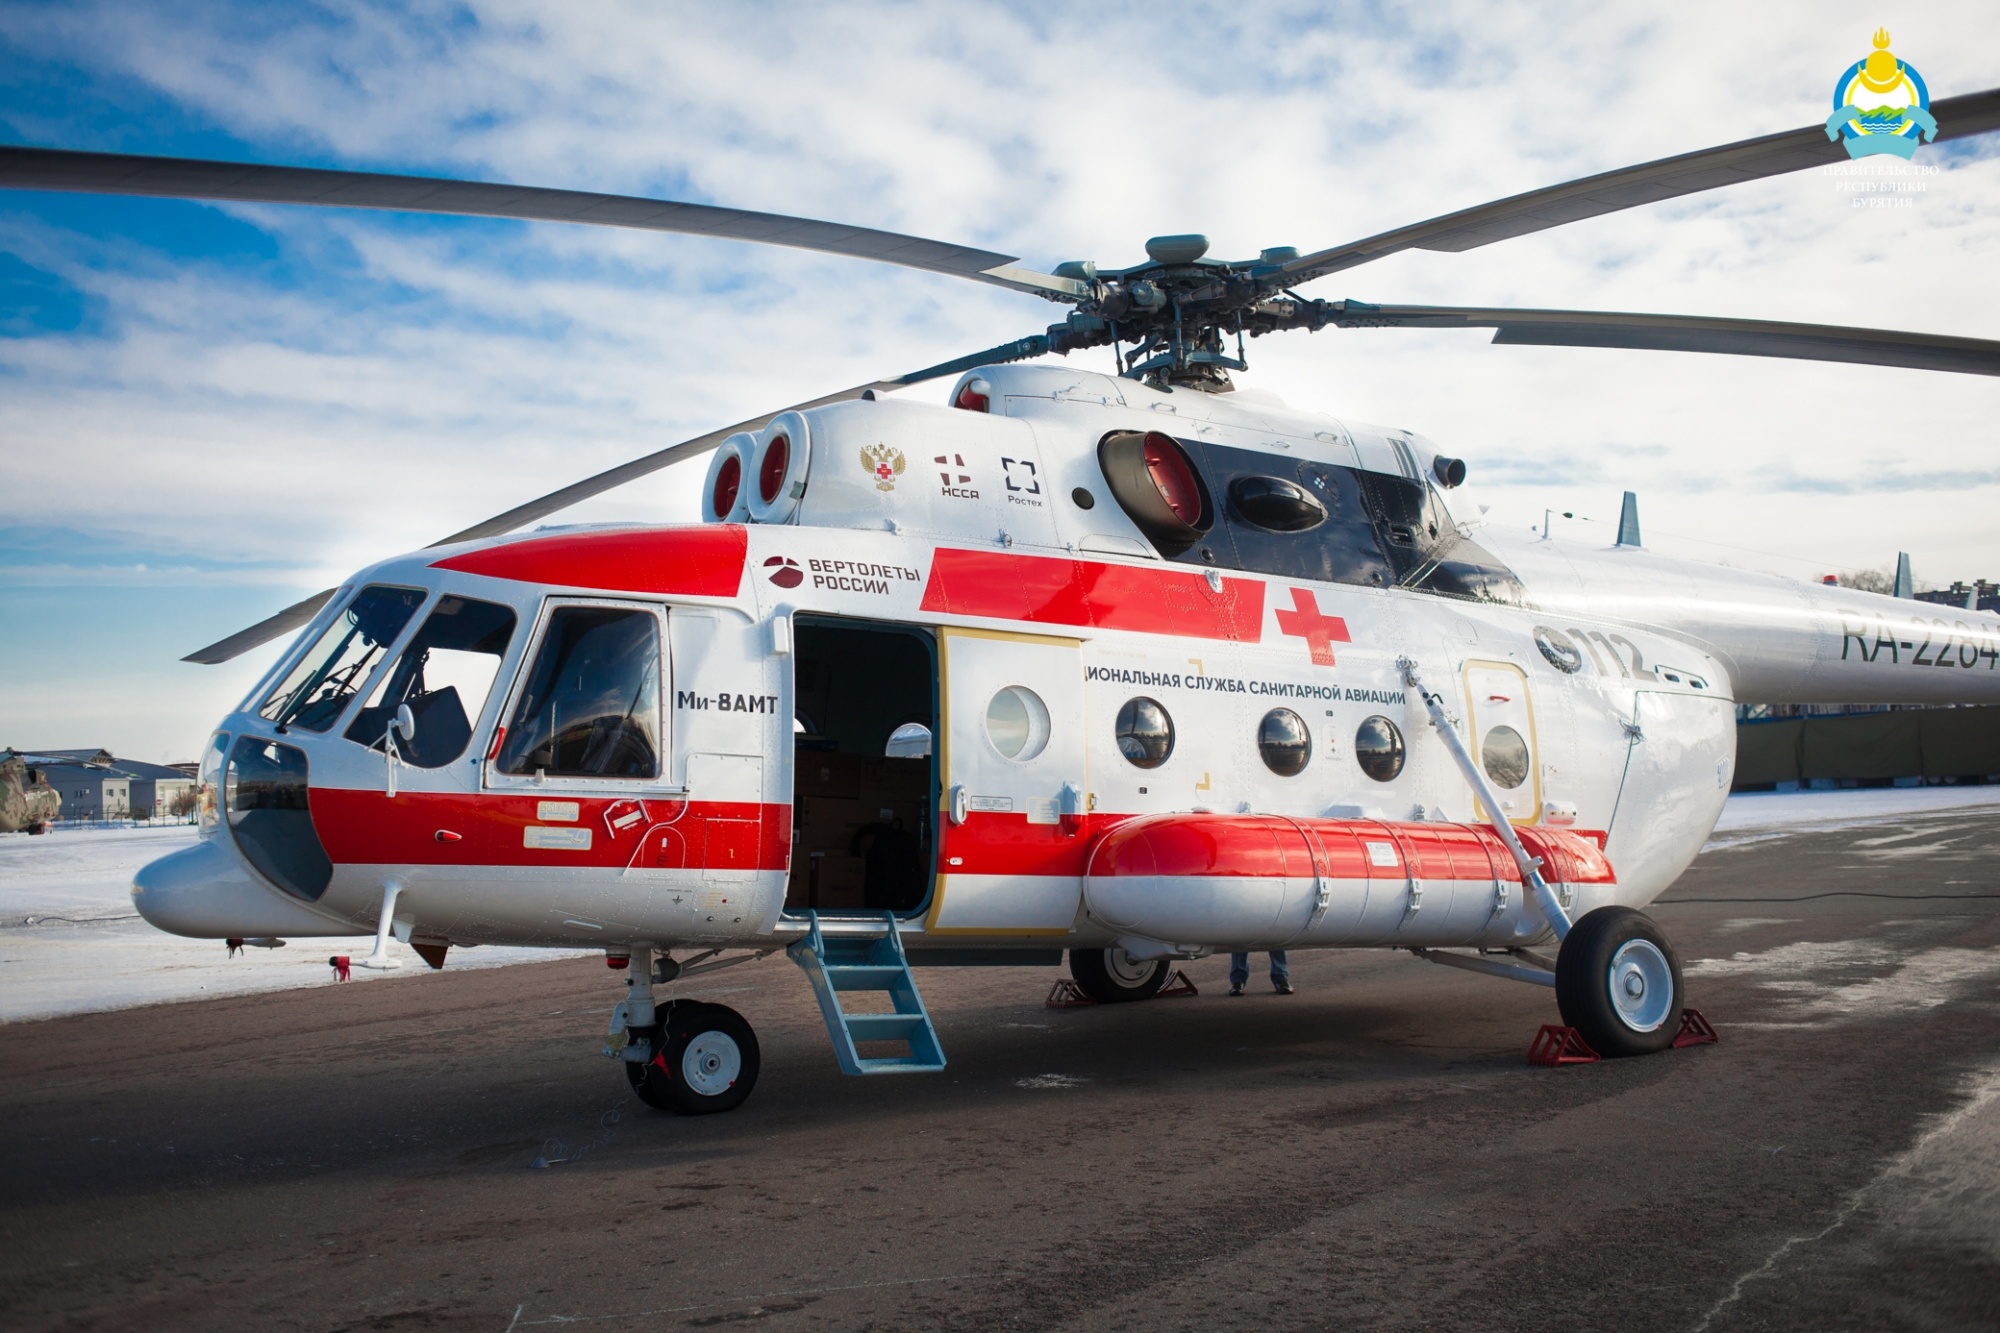 Фото Вертолеты Улан-Удэнского авиационного завода переданы Национальной службе санитарной авиации